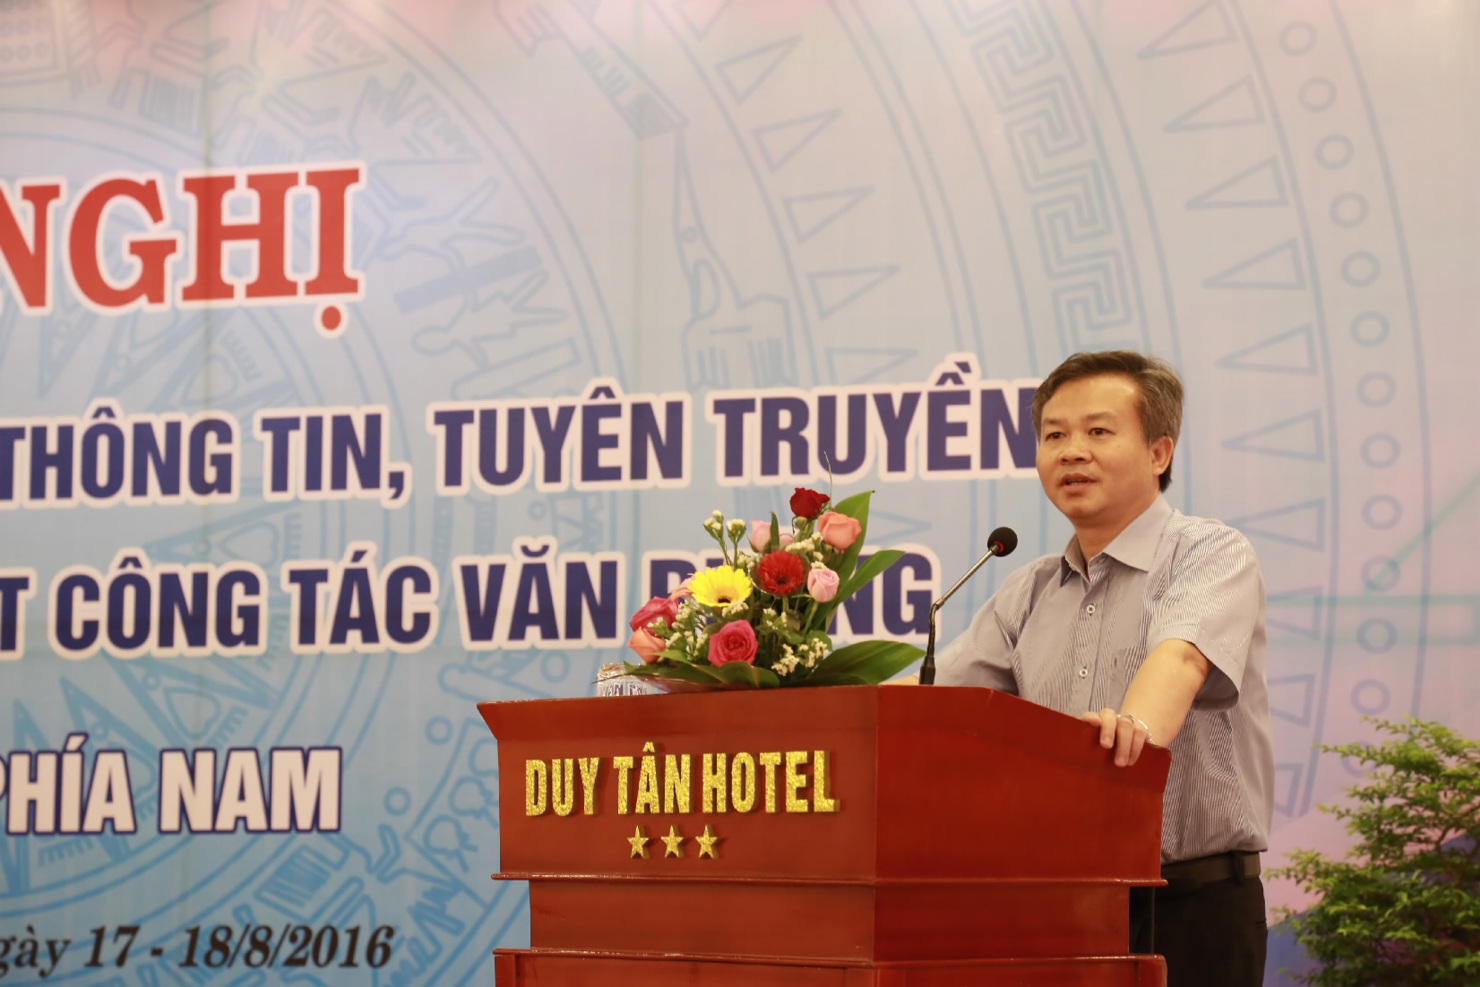 Đồng chí Nguyễn Quang Vinh – Phó Tổng Giám đốc KBNN phát biểu khai mạc Hội nghị